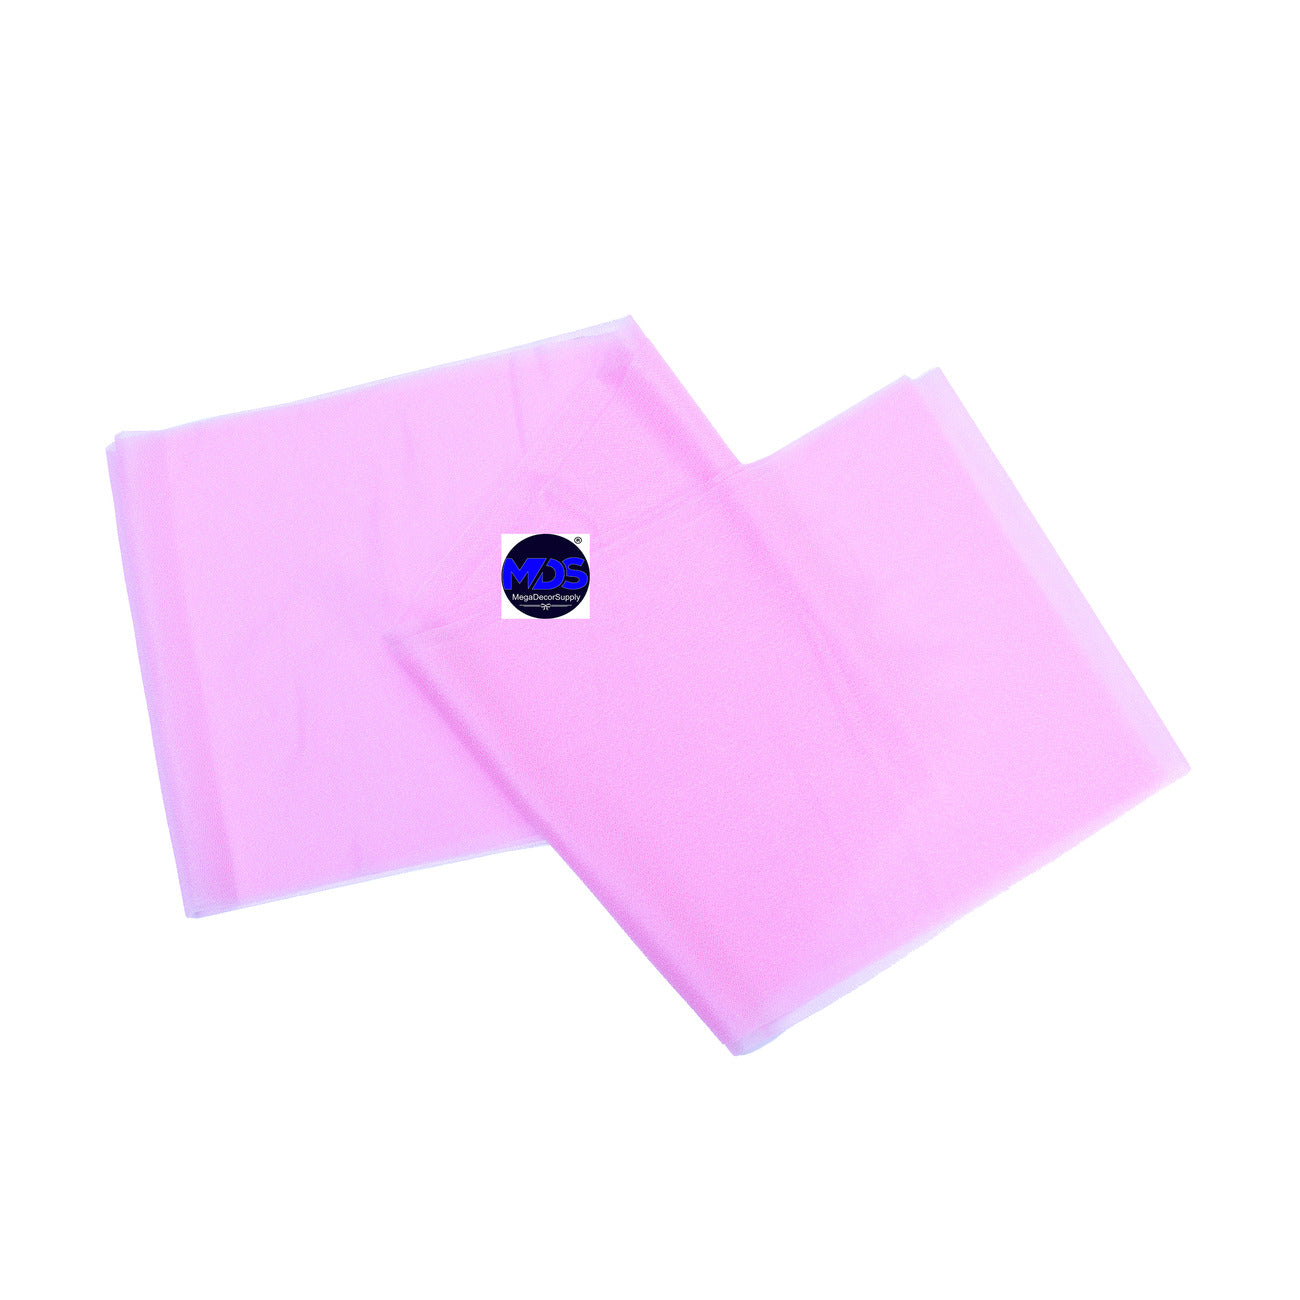 Bubblegum Pink,8599545f-477b-45b5-9fd1-12c117f214e6